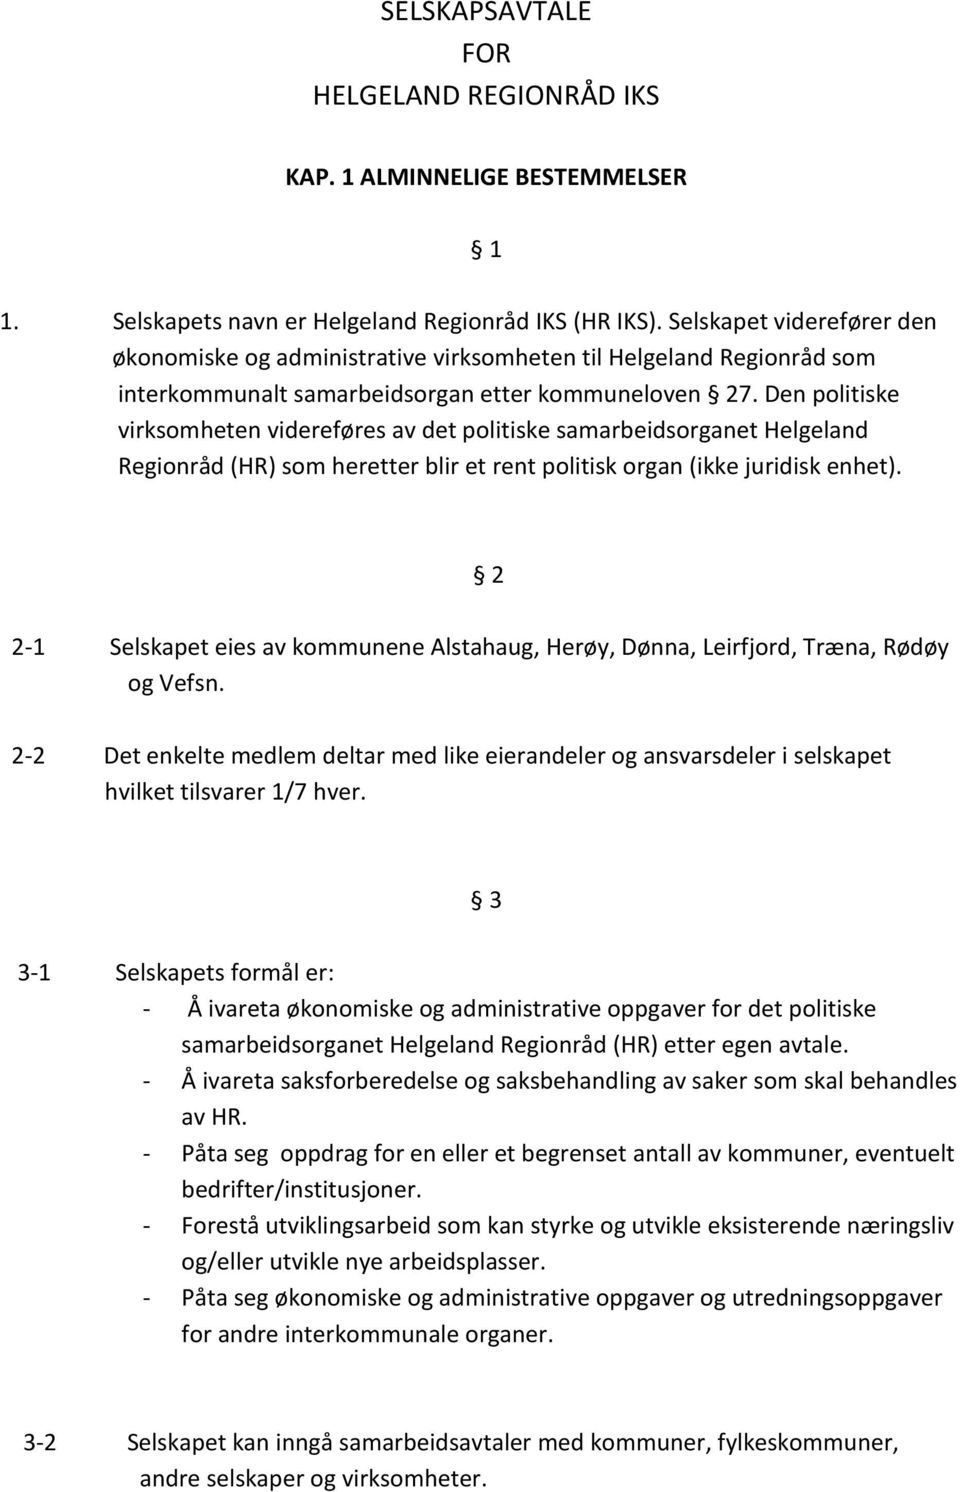 Den politiske virksomheten videreføres av det politiske samarbeidsorganet Helgeland Regionråd (HR) som heretter blir et rent politisk organ (ikke juridisk enhet).